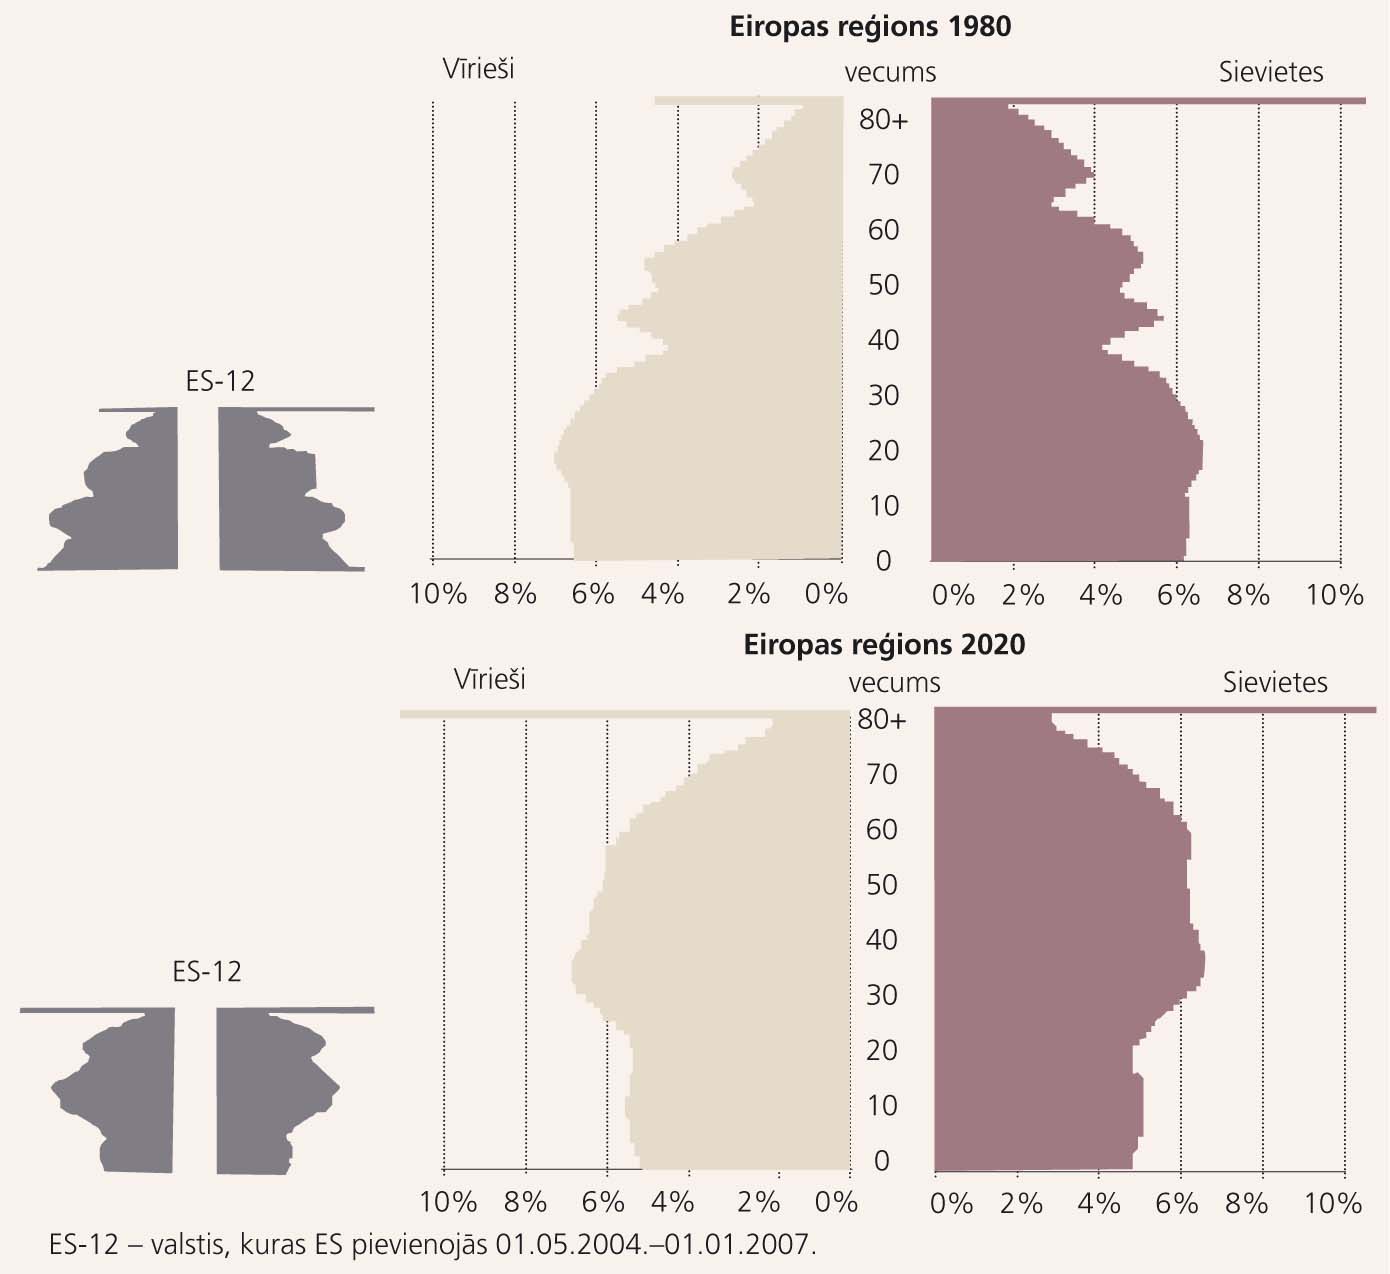 Populācijas piramīdas Eiropas valstu grupā un ES-12 valstīs 1980. gadā  un 2020. gadā: izmaiņas dzimumu un vecuma struktūrā [6]